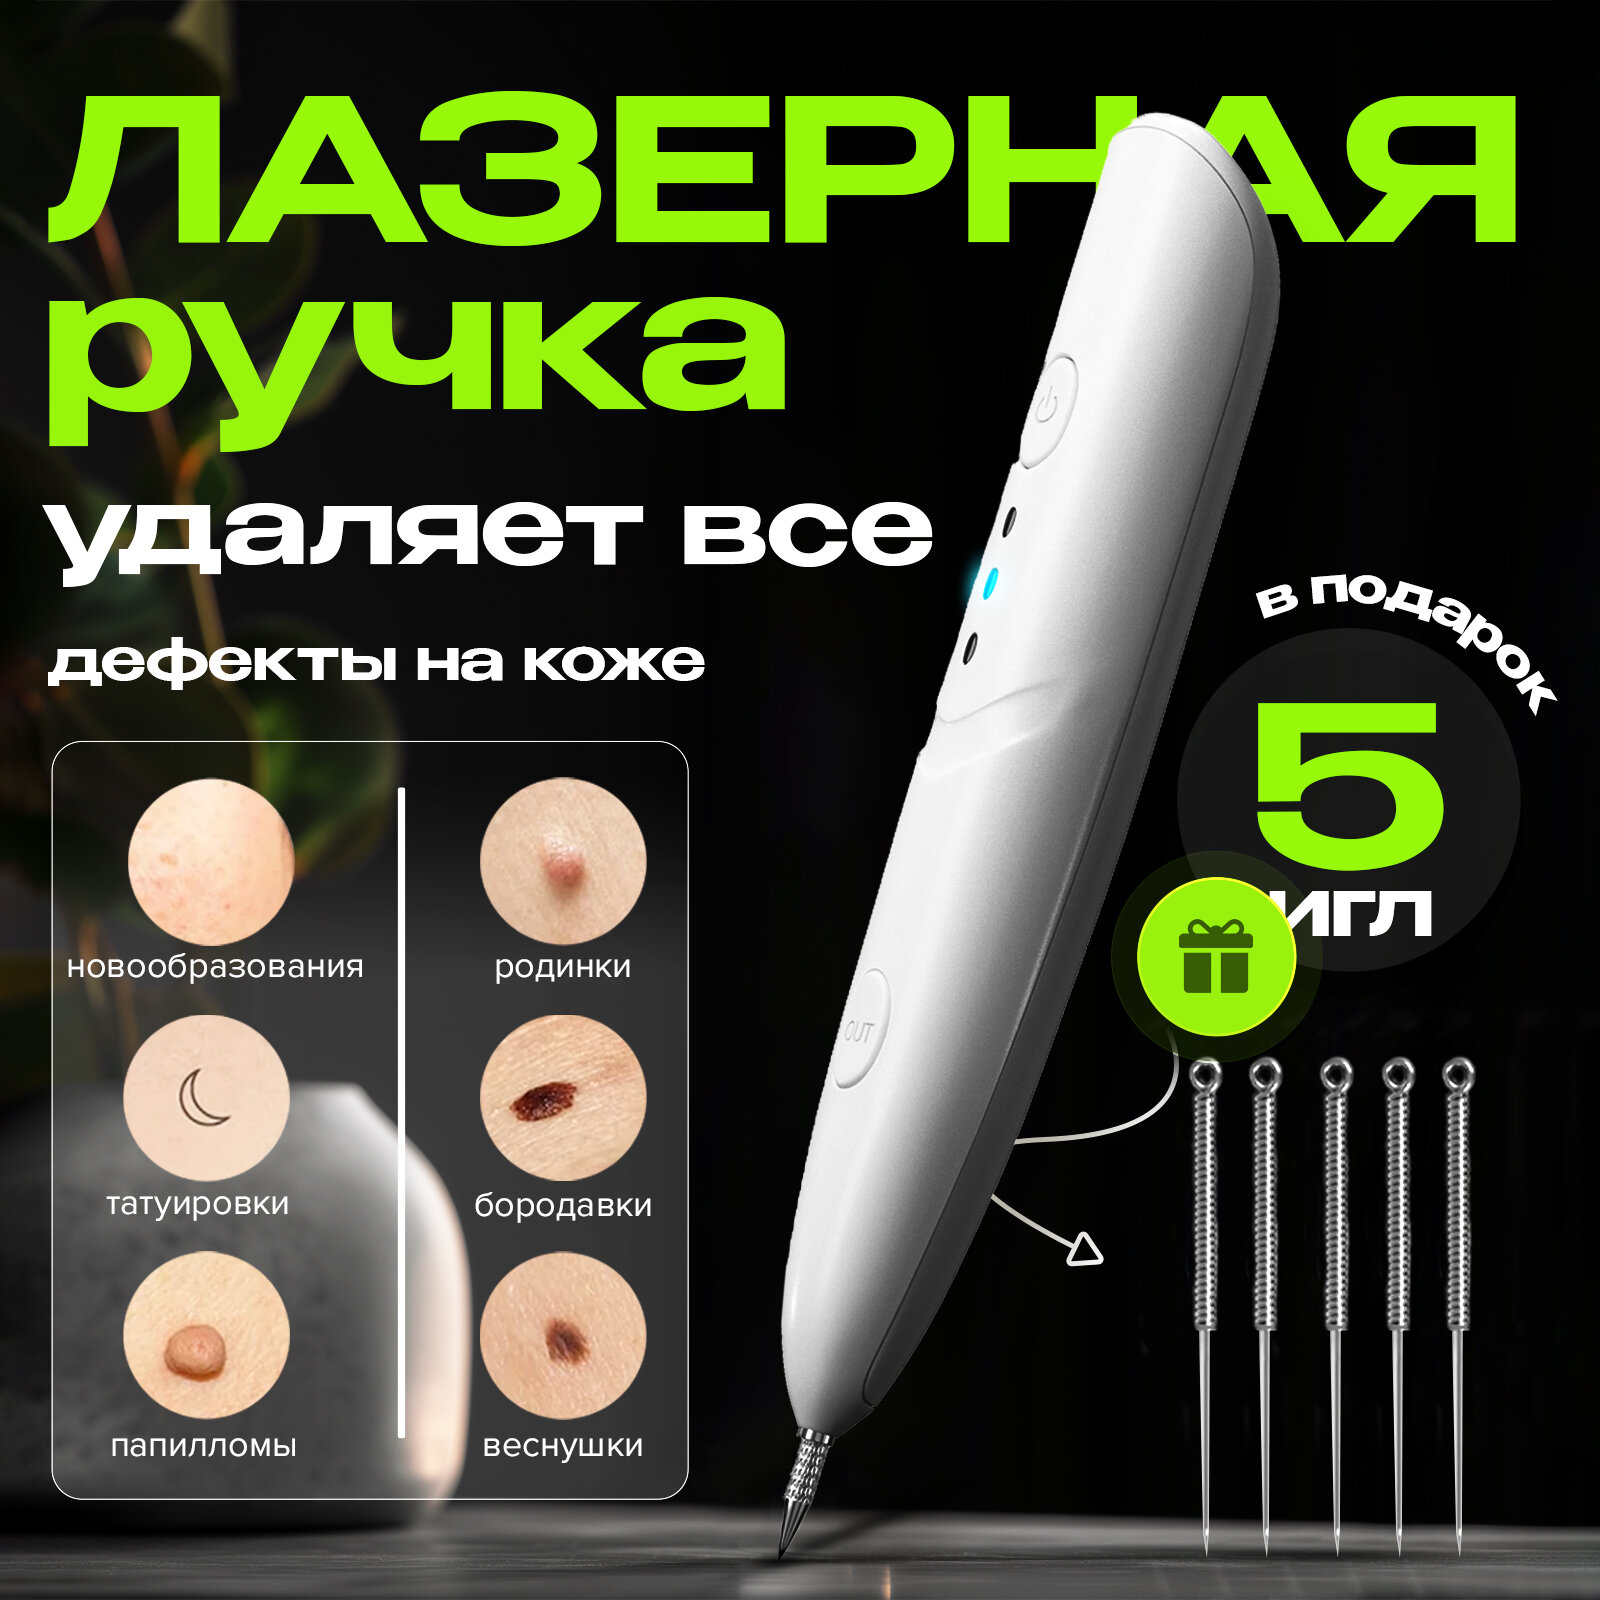 Плазменная ручка Evo Beauty, косметологический аппарат для удаления папиллом. Иглы в комплекте